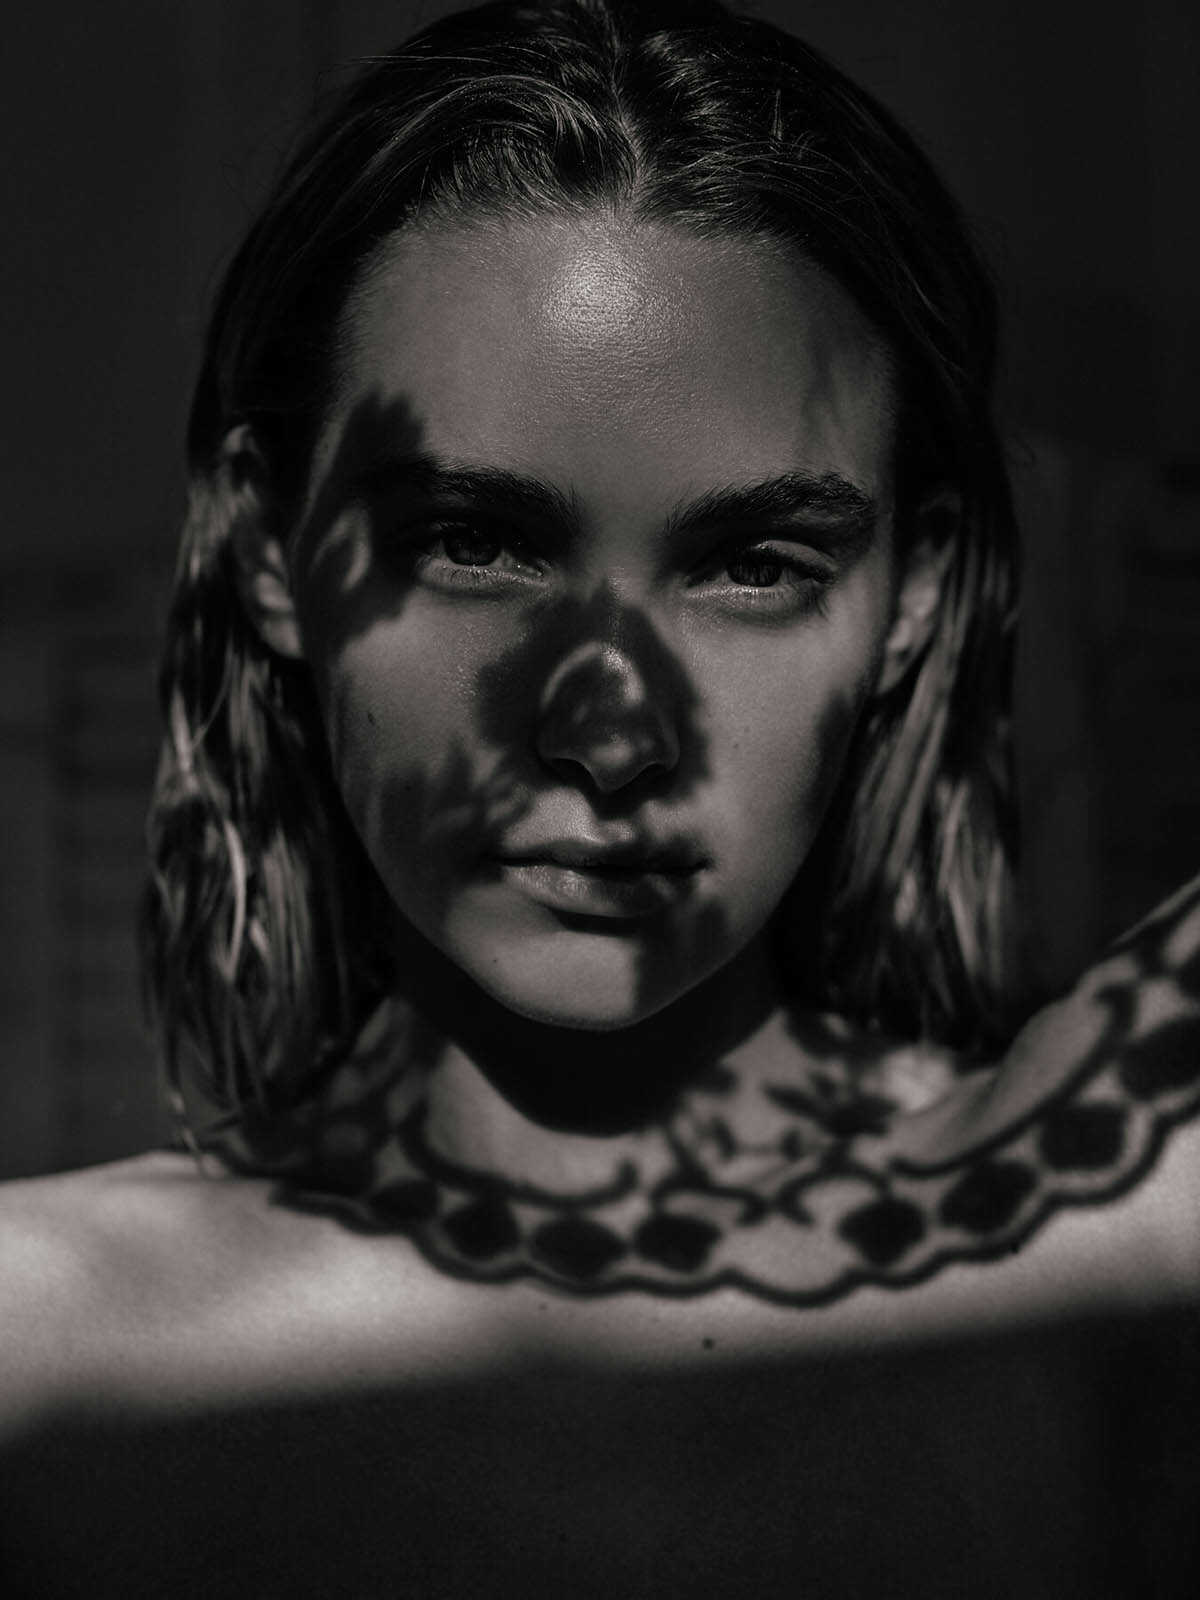 Η μουνάρα μοντέλο Nikki Hillier σε γυμνές φωτογραφίες